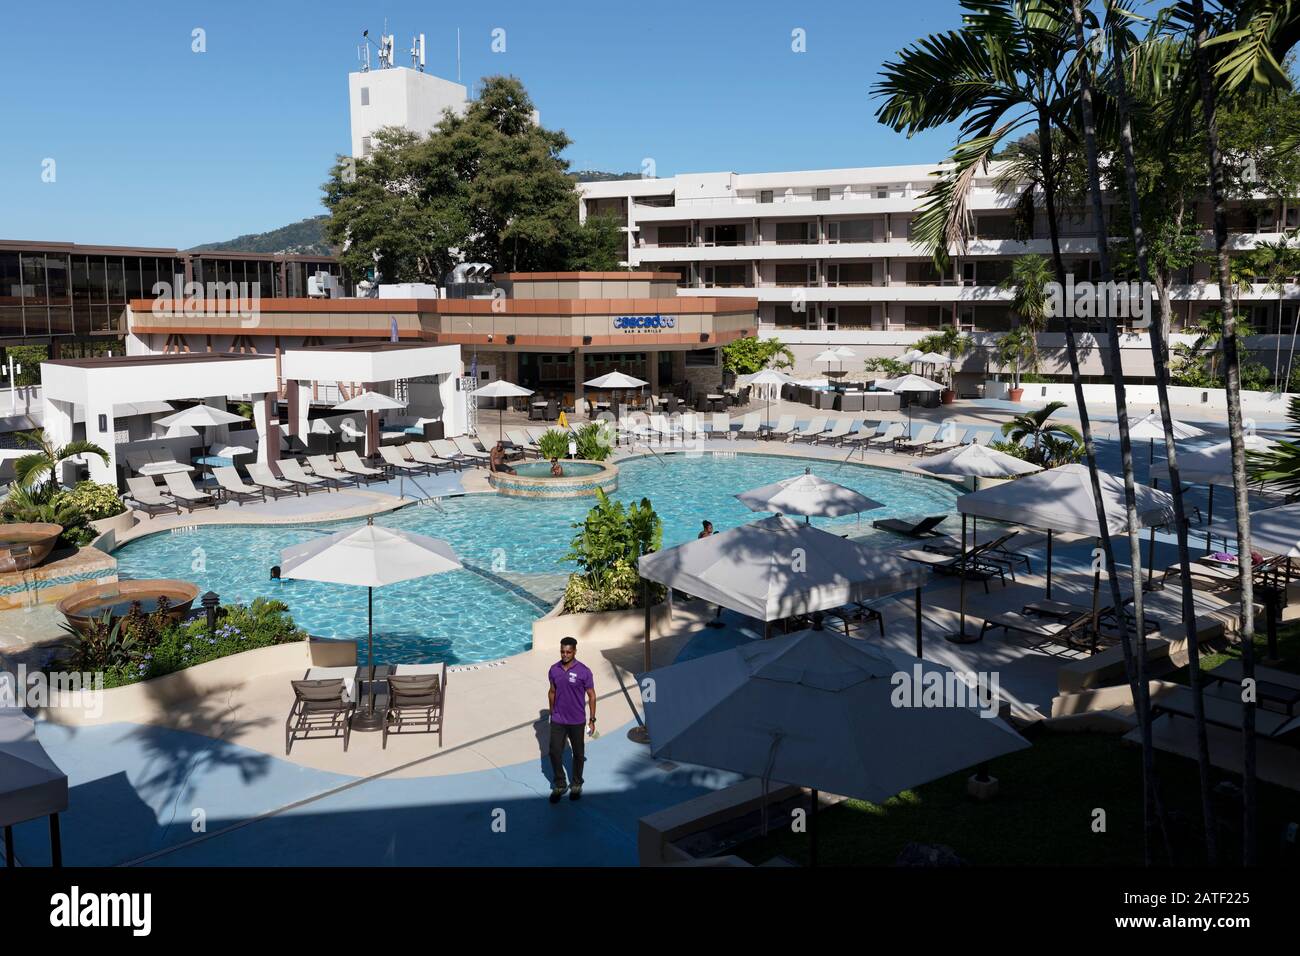 Hilton Hotel piscina, Puerto España, Trinidad y Tobago Fotografía de stock  - Alamy